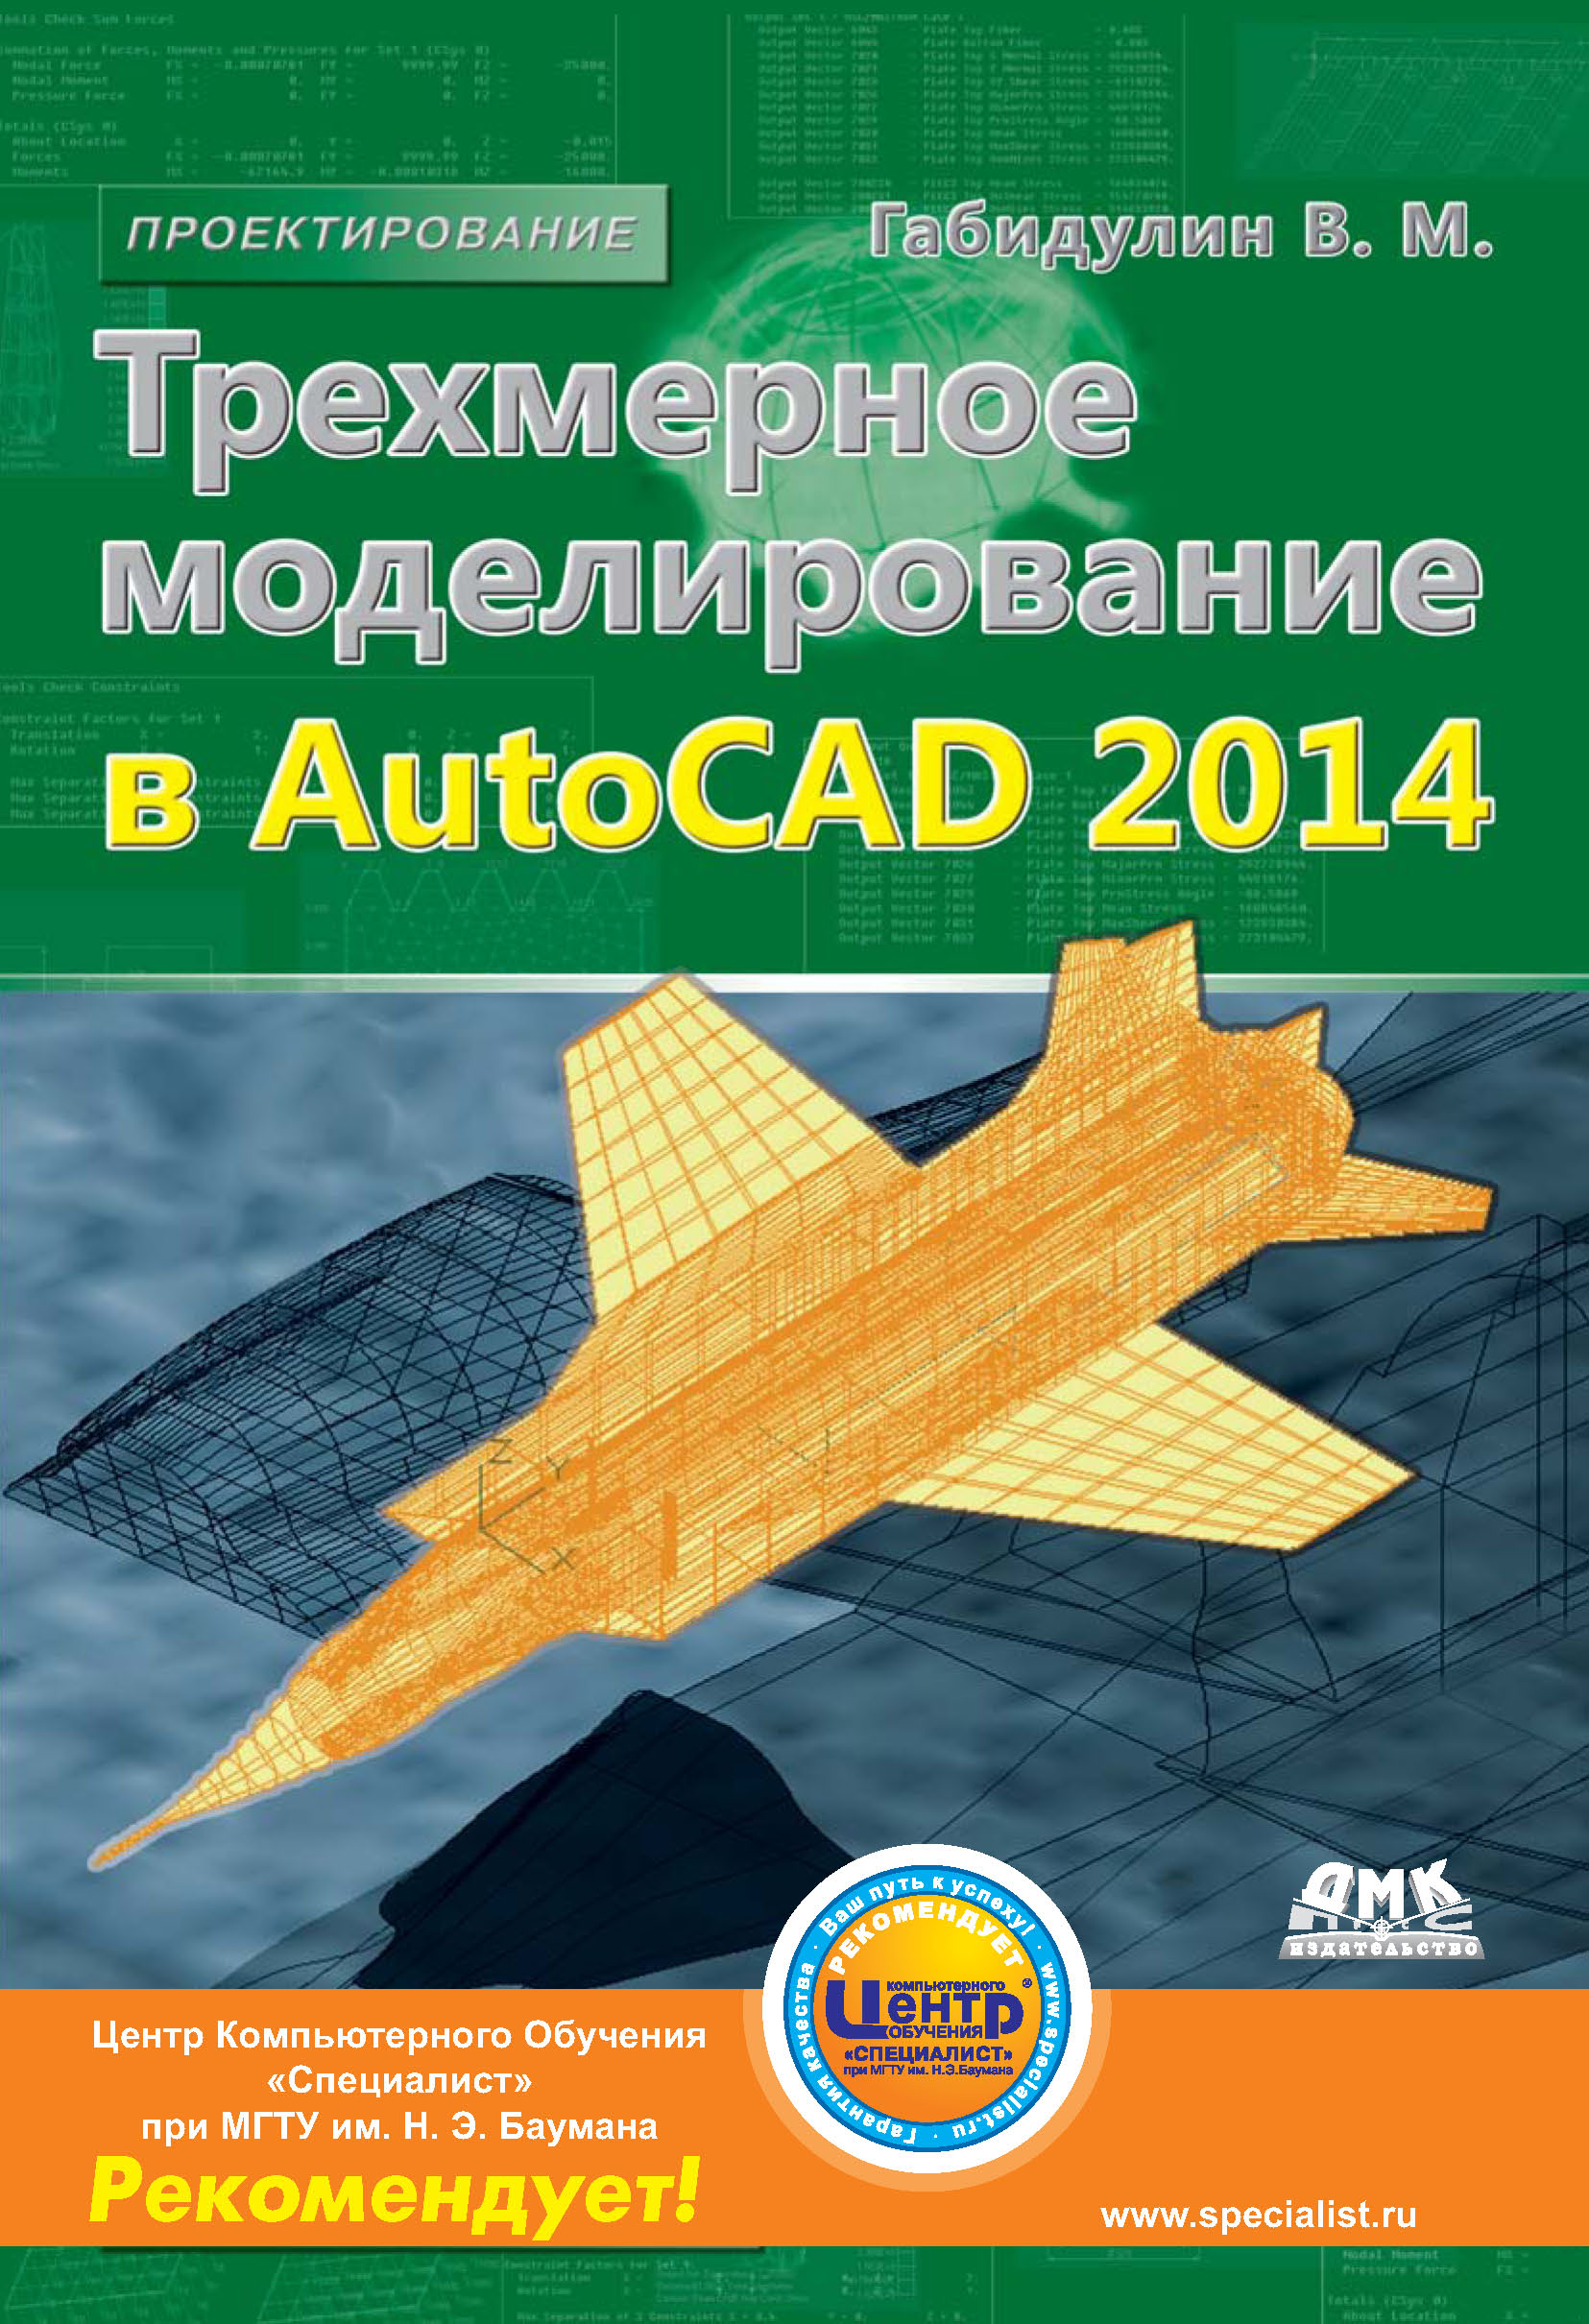 Книга Проектирование (ДМК Пресс) Трехмерное моделирование в AutoCAD 2014 созданная В. М. Габидулин может относится к жанру программы, техническая литература. Стоимость электронной книги Трехмерное моделирование в AutoCAD 2014 с идентификатором 10016576 составляет 279.00 руб.